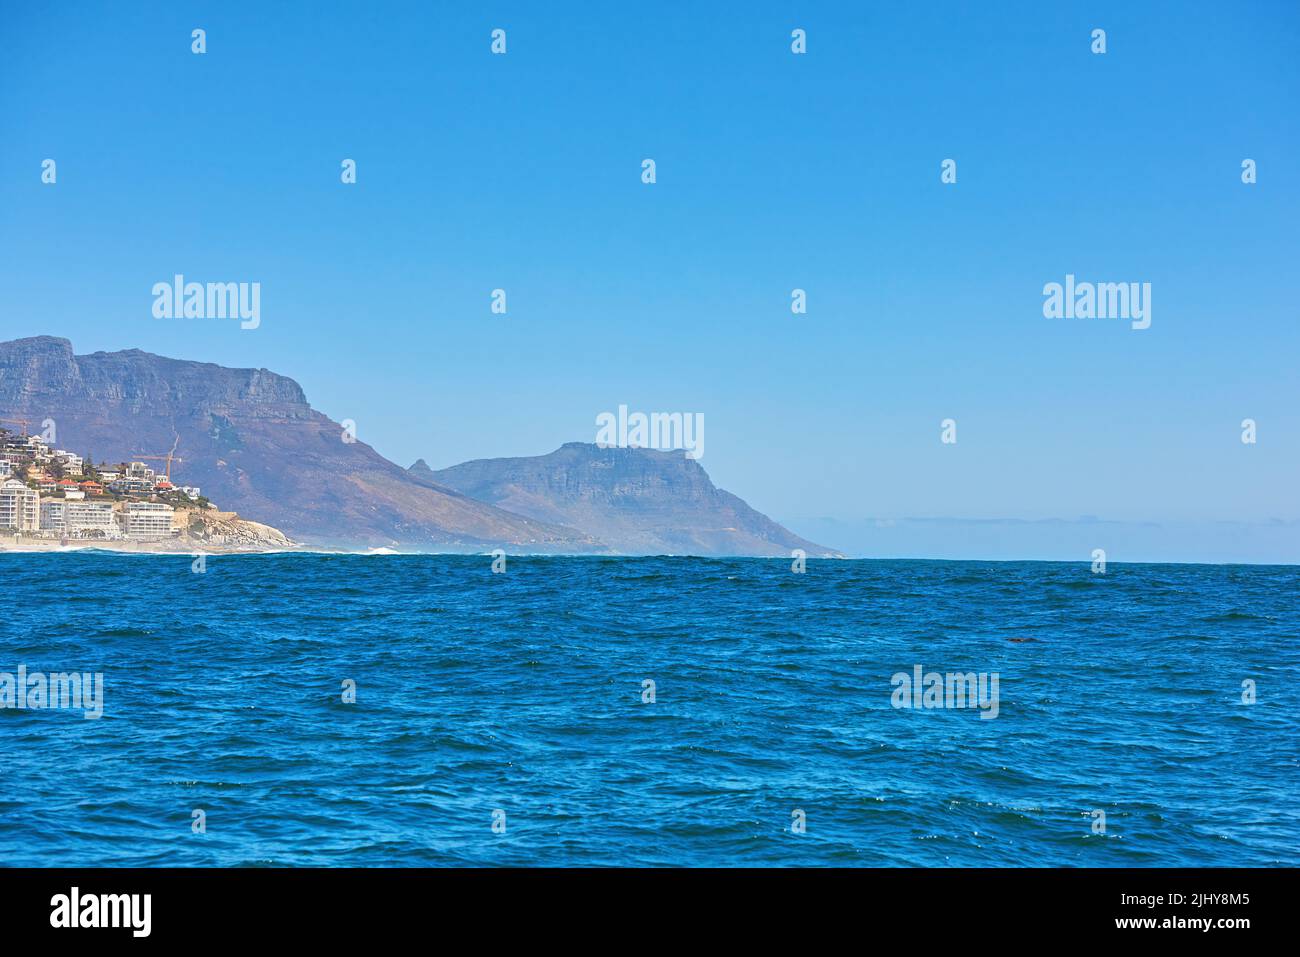 Il mare blu profondo o la vasta distesa dell'oceano aperto sotto il cielo blu chiaro copia spazio con Table Mountain sullo sfondo. Acque calme su un Foto Stock